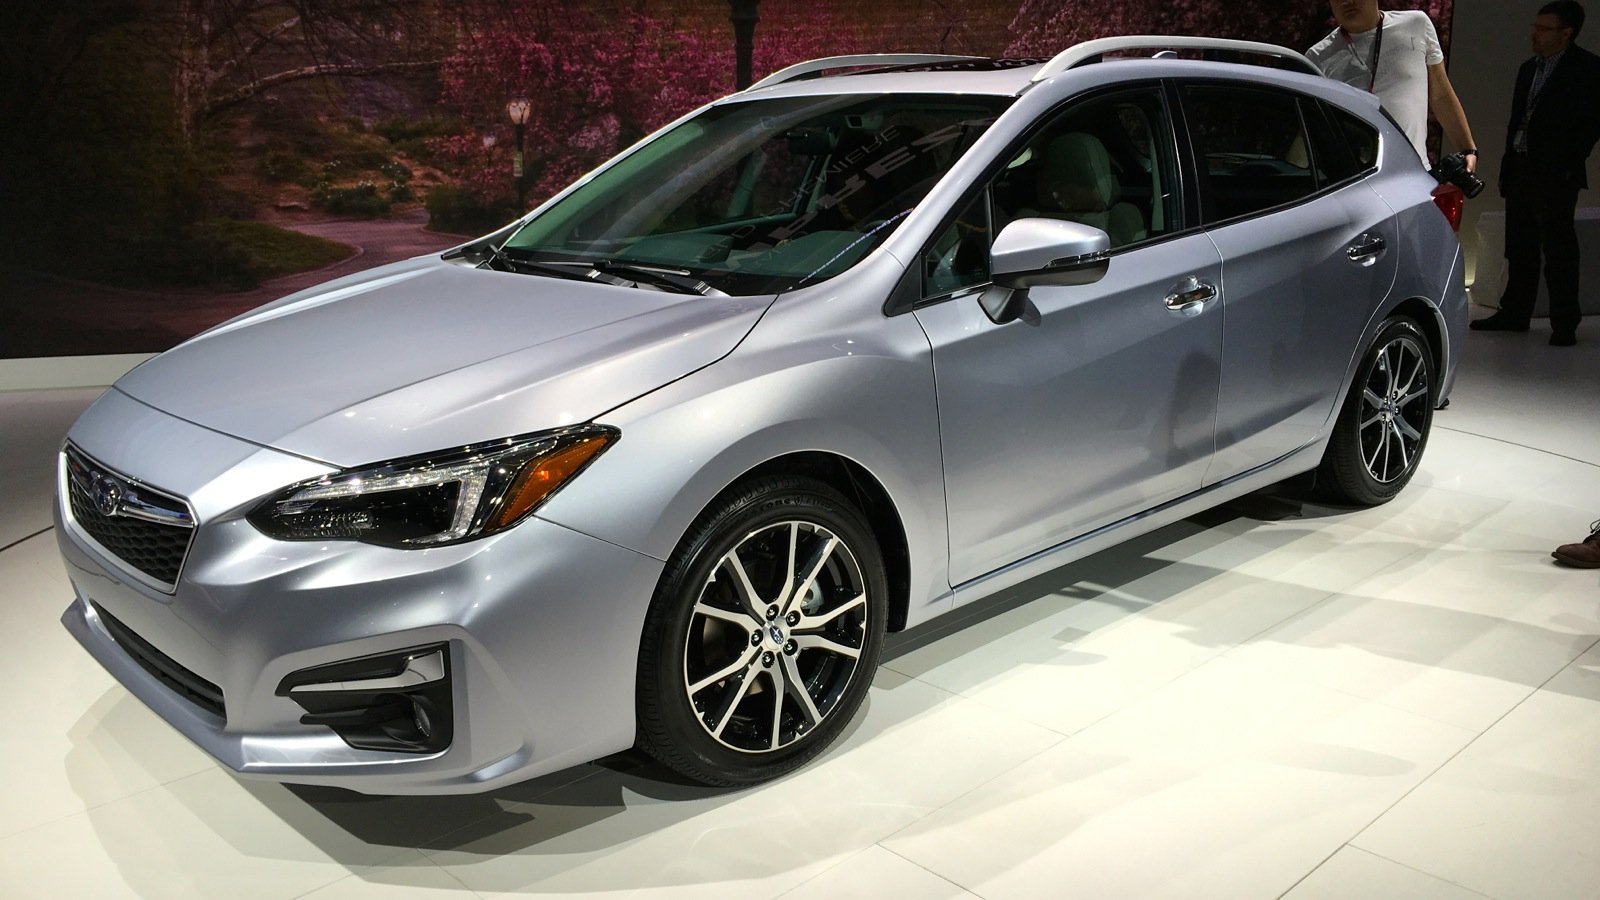 2017-Subaru-Impreza-hatch-and-sedan-NY-a